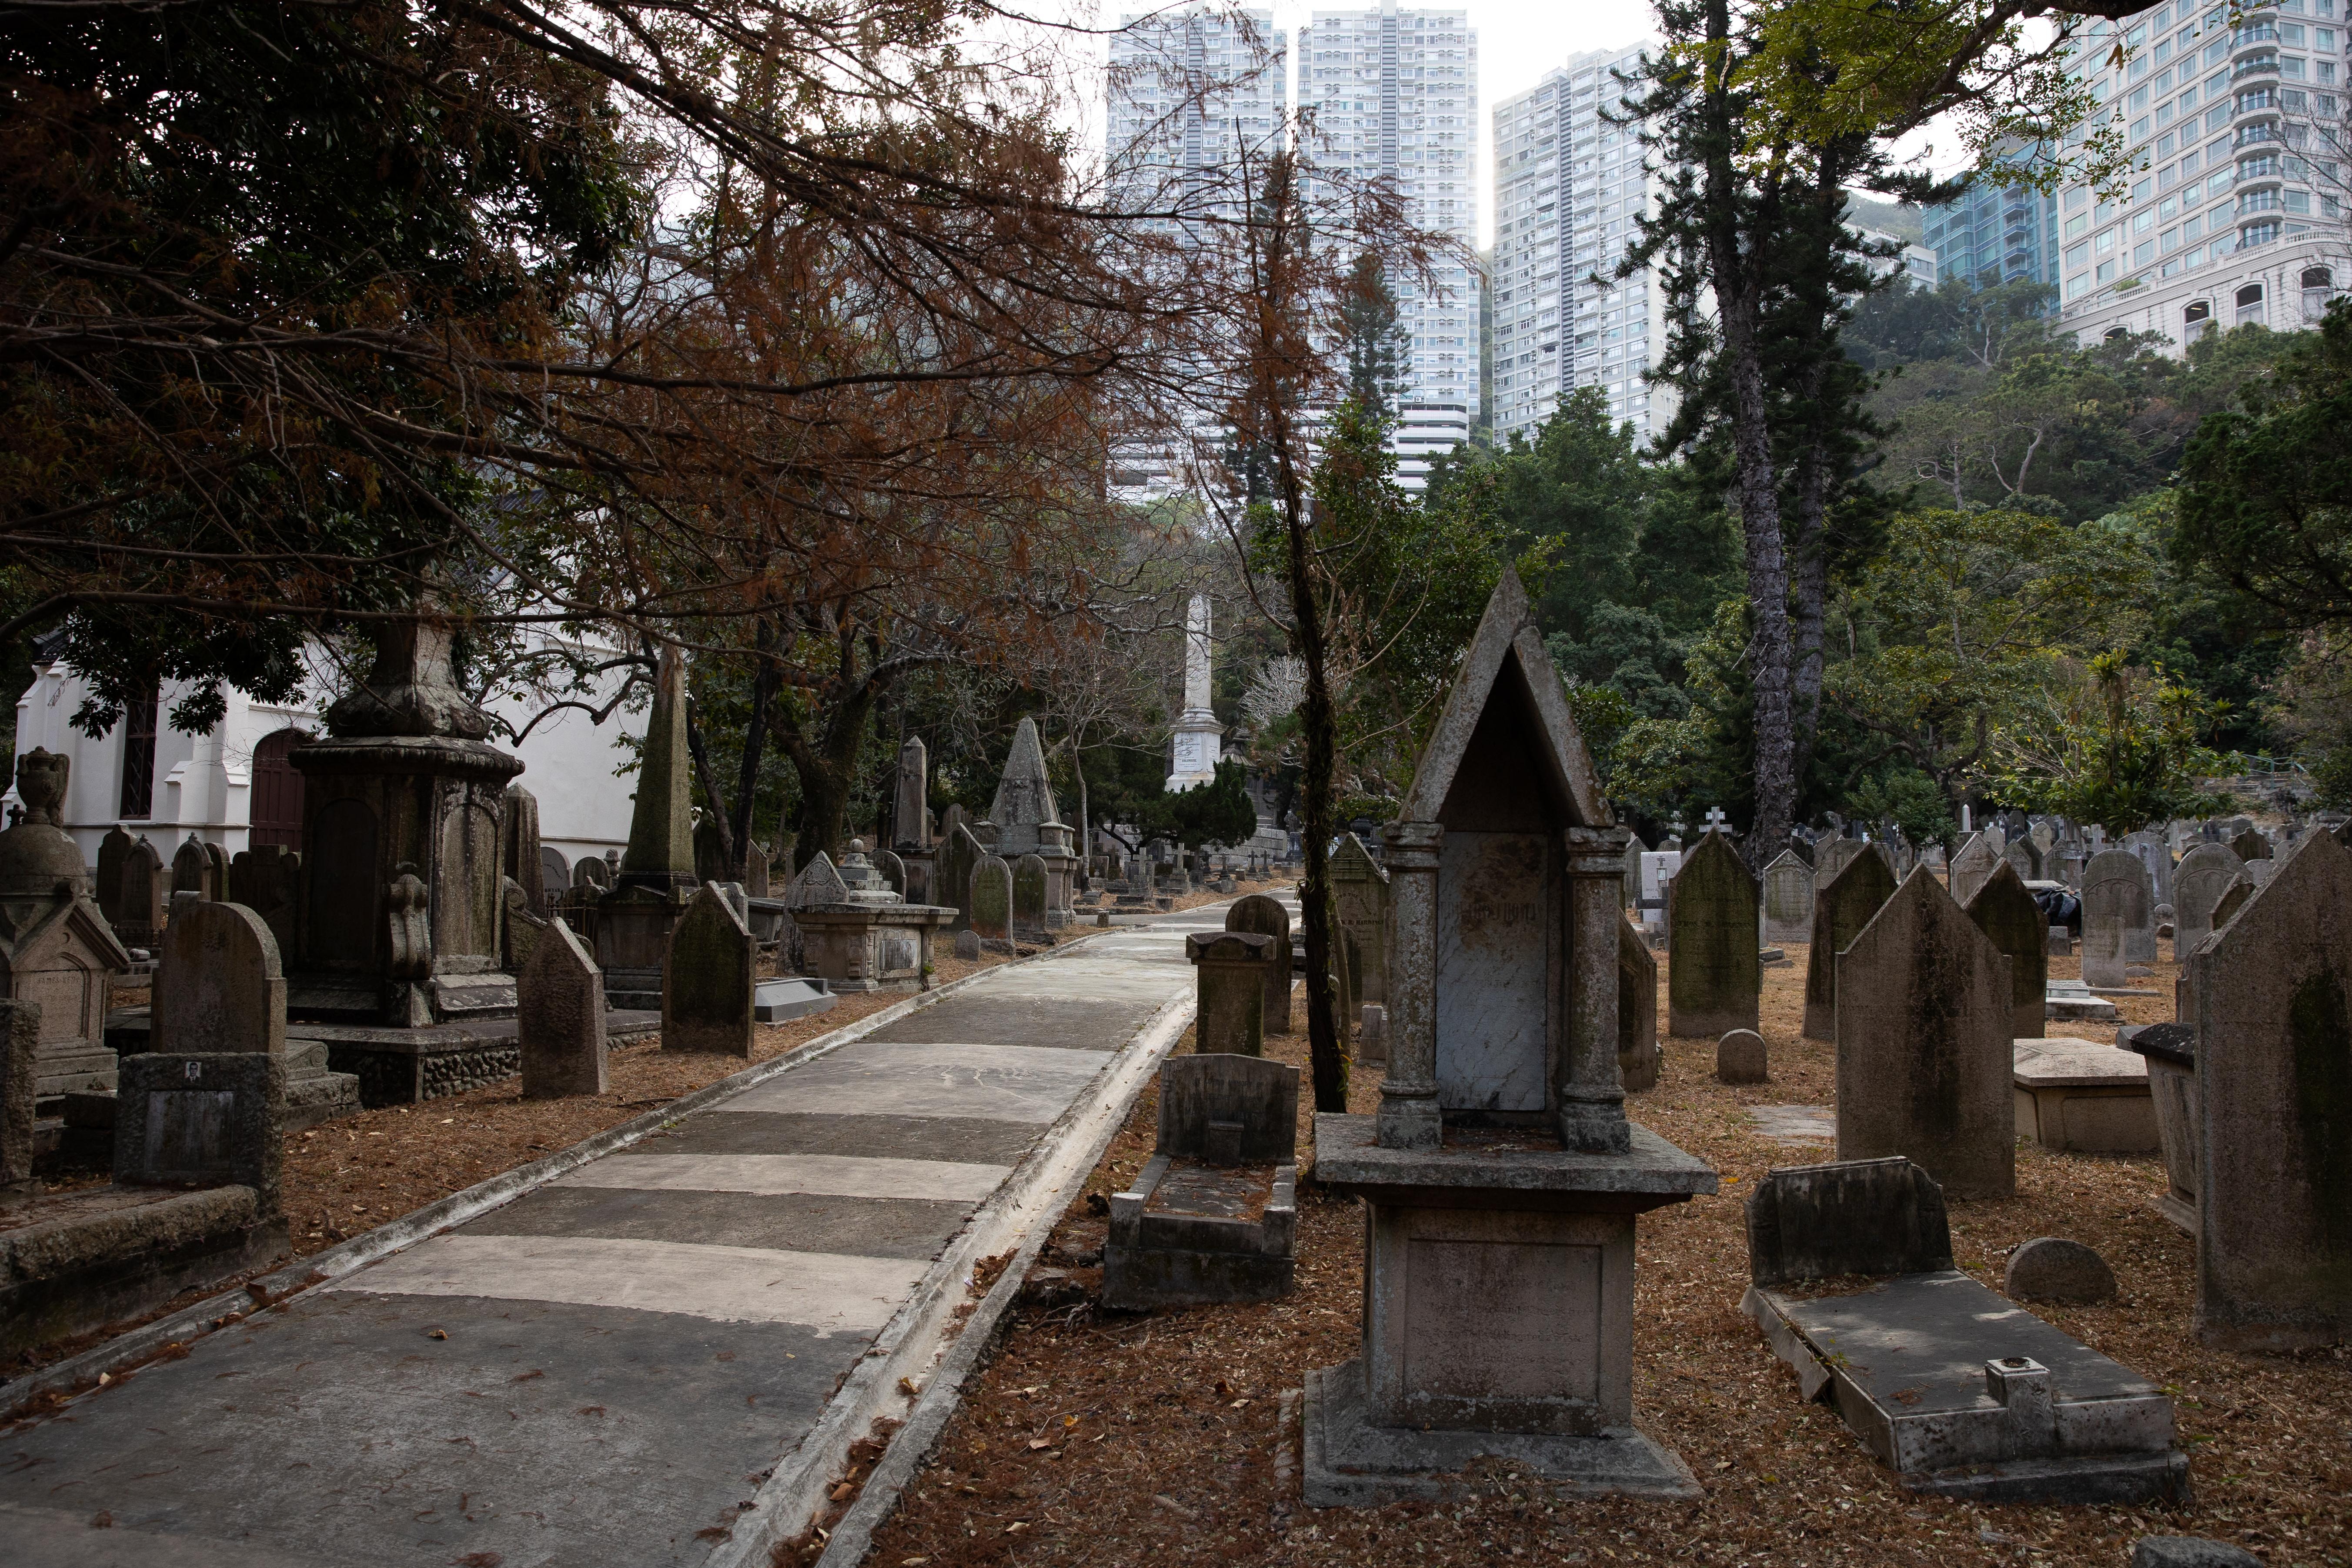 香港坟场属本港早期香港墓园，由当年英国政府引入欧洲十九世纪的花园墓园概念来港建立，当时由英国圣公会管理，初期没有定名，由于较多外国人落葬，当年又称为「红毛坟场」。(资料图片)